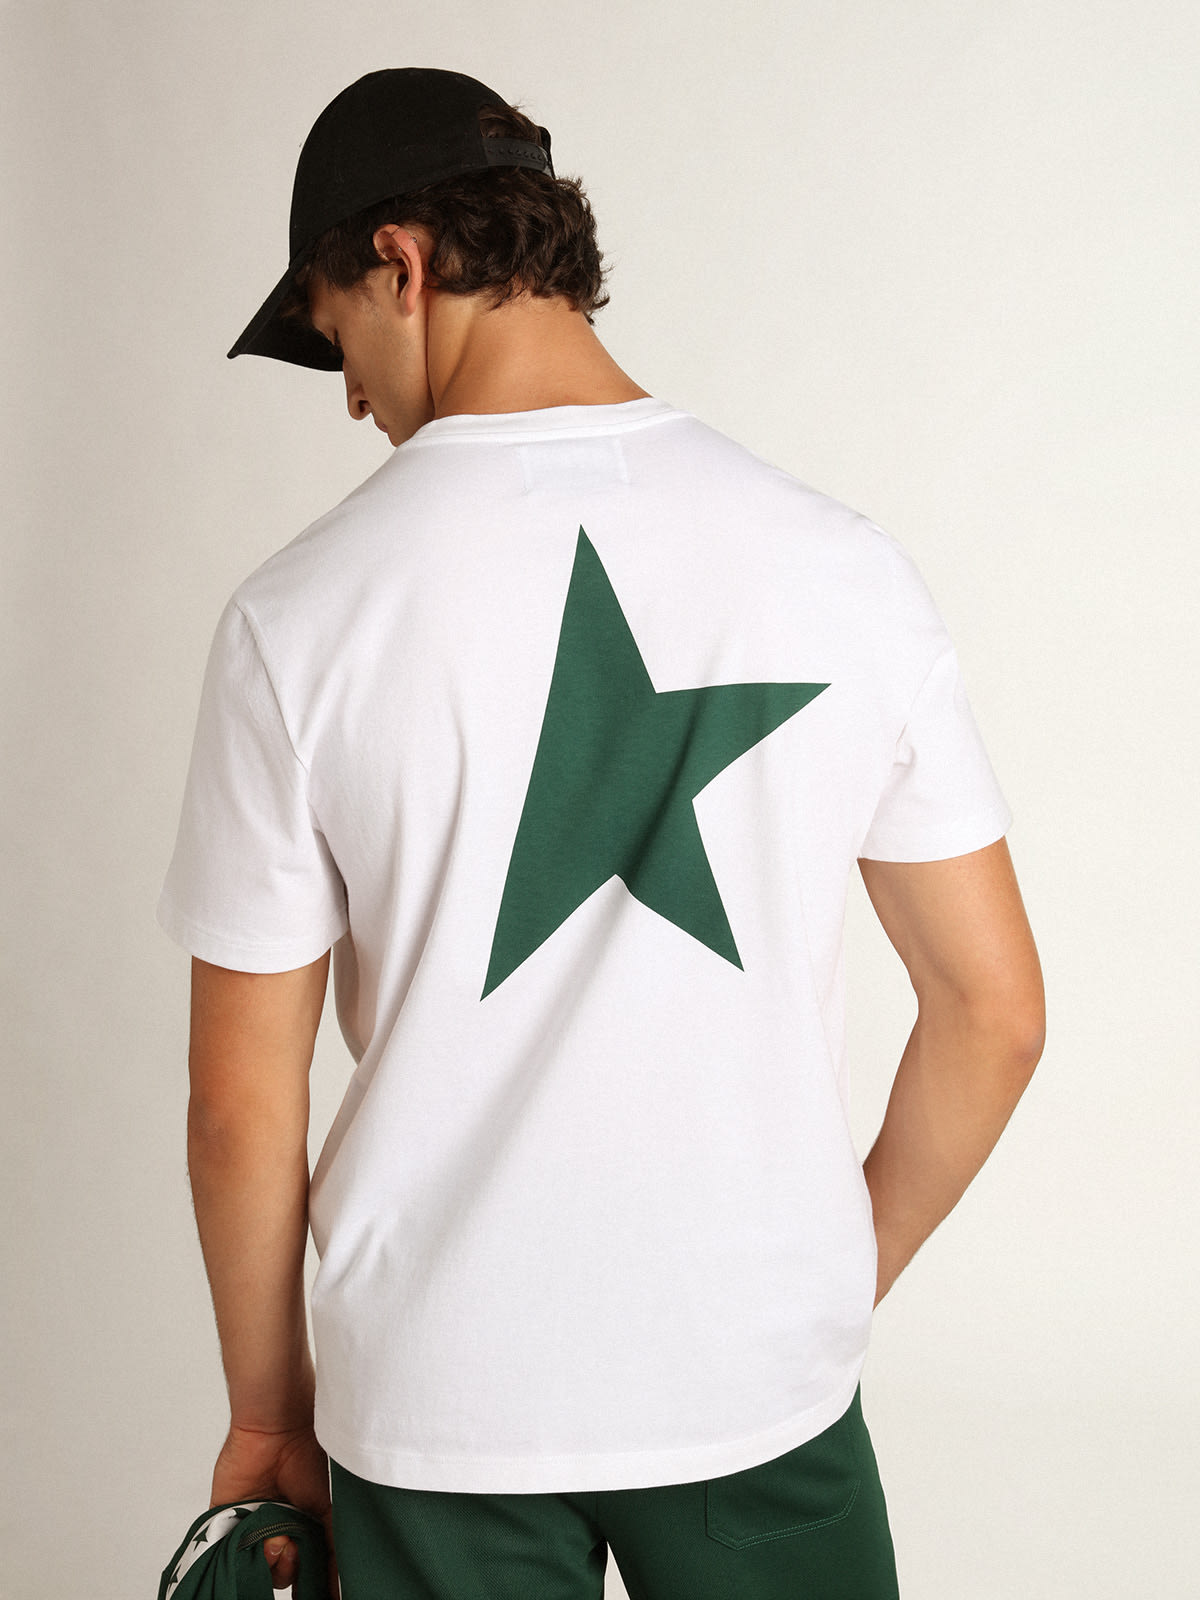 Golden Goose - T-shirt homme blanc avec logo et étoile verts contrastés in 